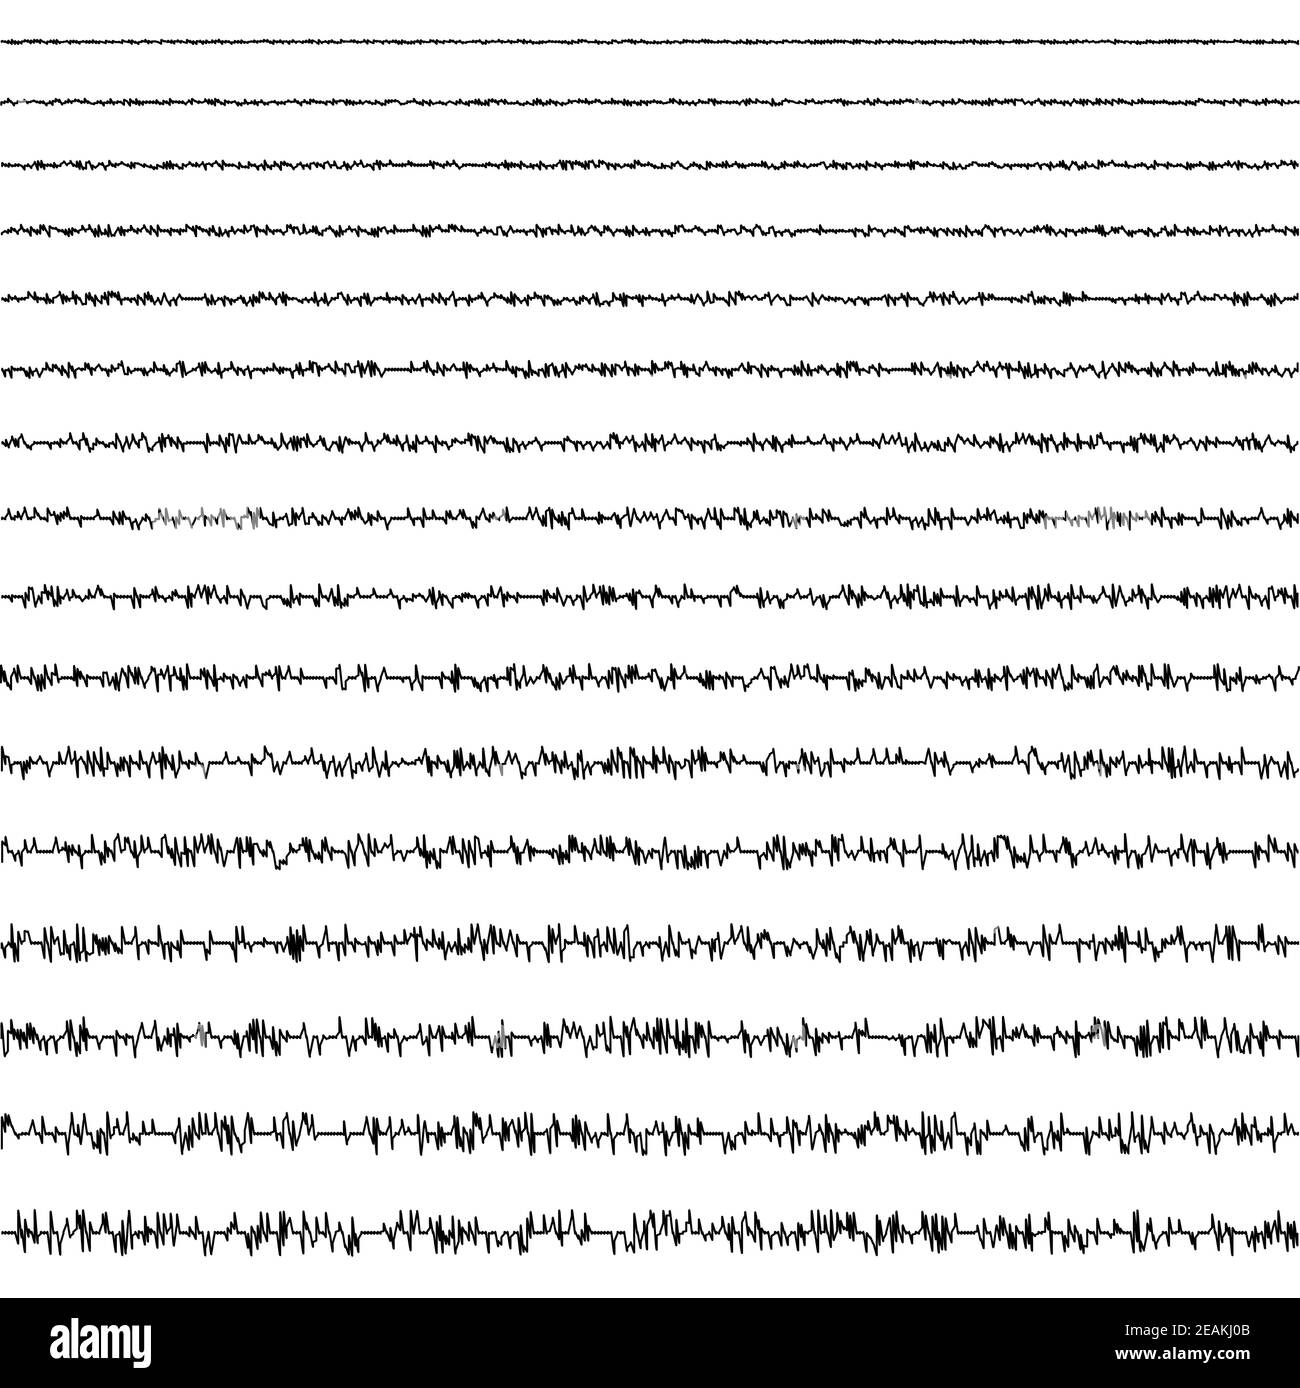 ensemble de lignes horizontales de vagues sismiques de la forme vibrationnelle d'un tremblement de terre avec une fréquence et une amplitude aléatoires, un sismogramme vectoriel Illustration de Vecteur